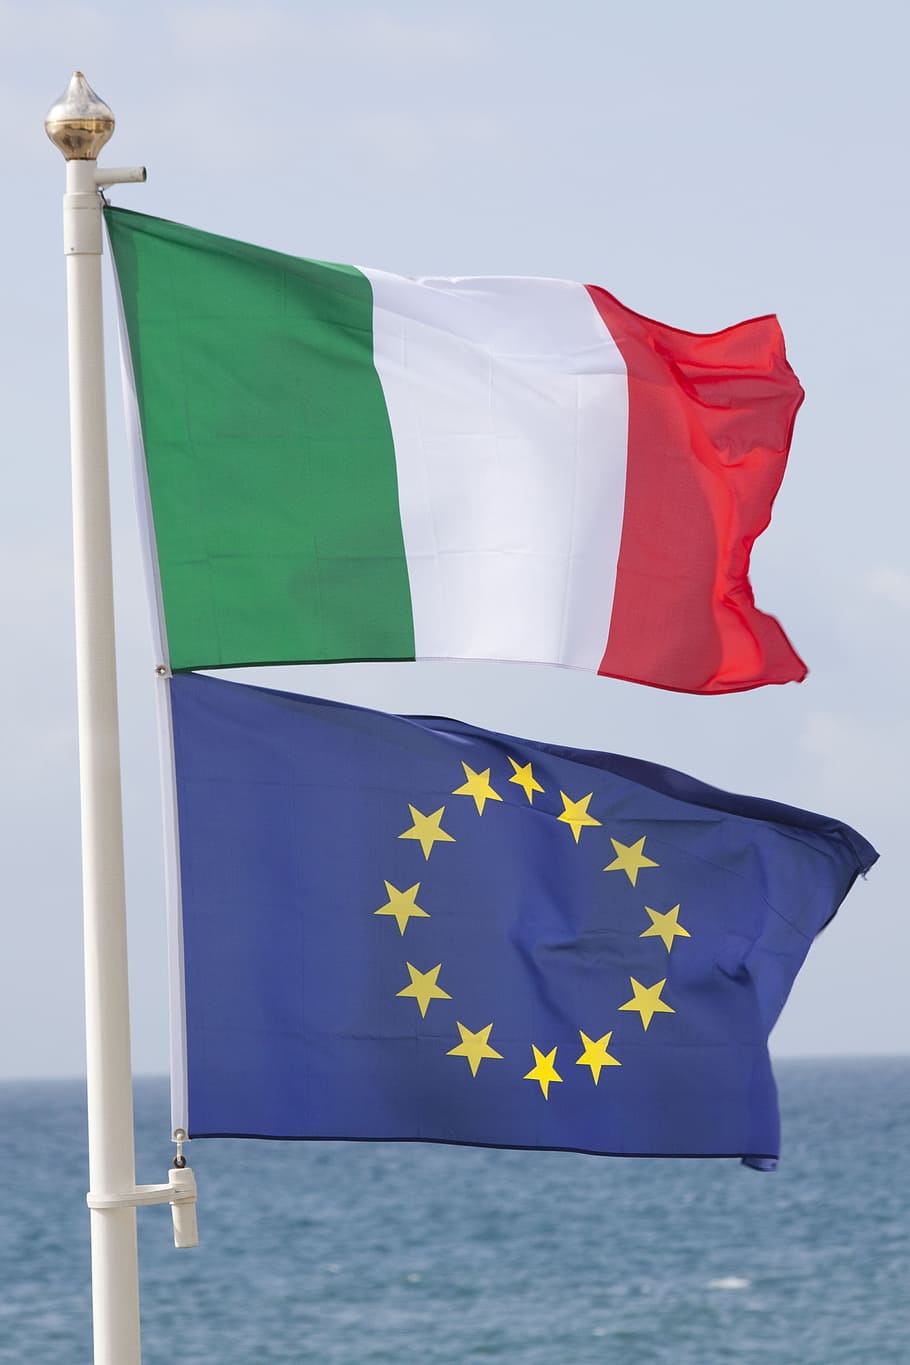 Bandera, Italia, Blanco, verde, rojo, unión europea, azul, estrella, tricolor, bandera nacional